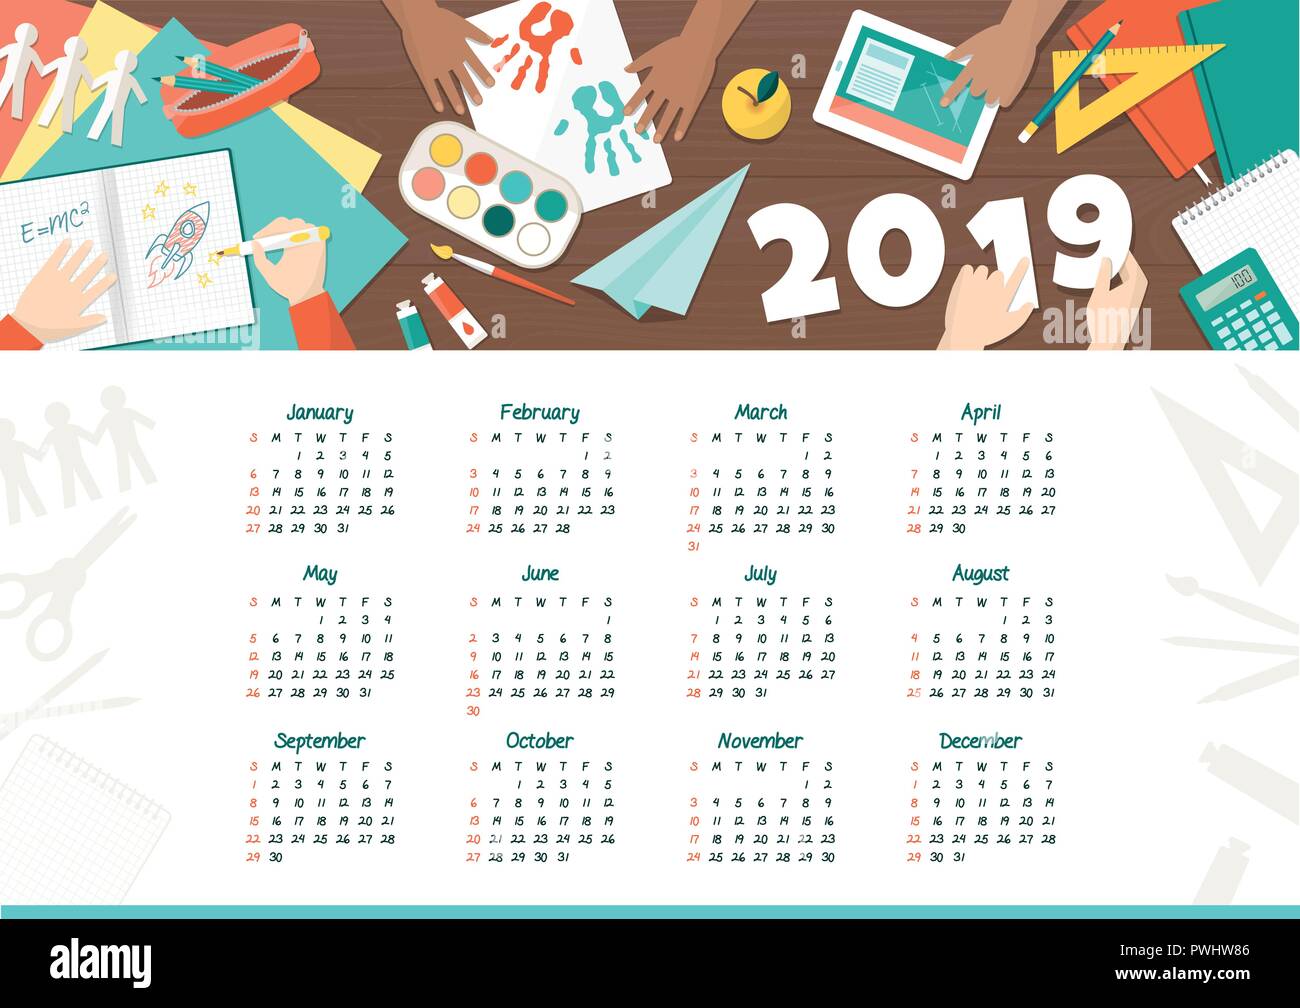 Kreative Zicklein an der Schule Kalender 2019: glückliche Kinder studieren und spielen zusammen Stock Vektor